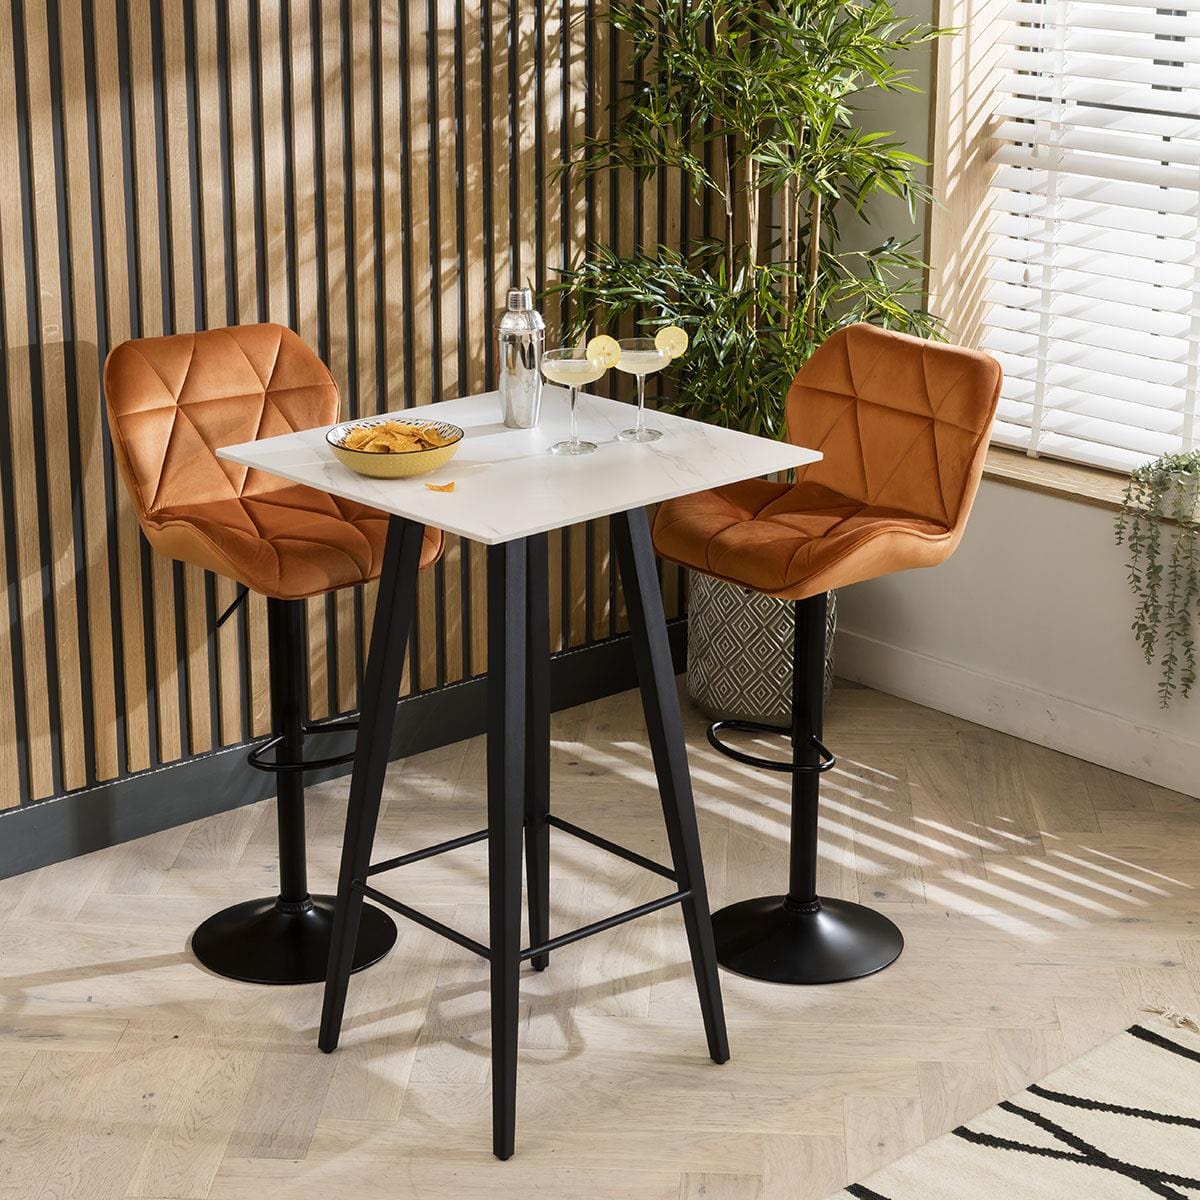 Quatropi Luxury High Table And 2 Bar Stool Set - White Ceramic Marble Bar Table - Velvet Stools